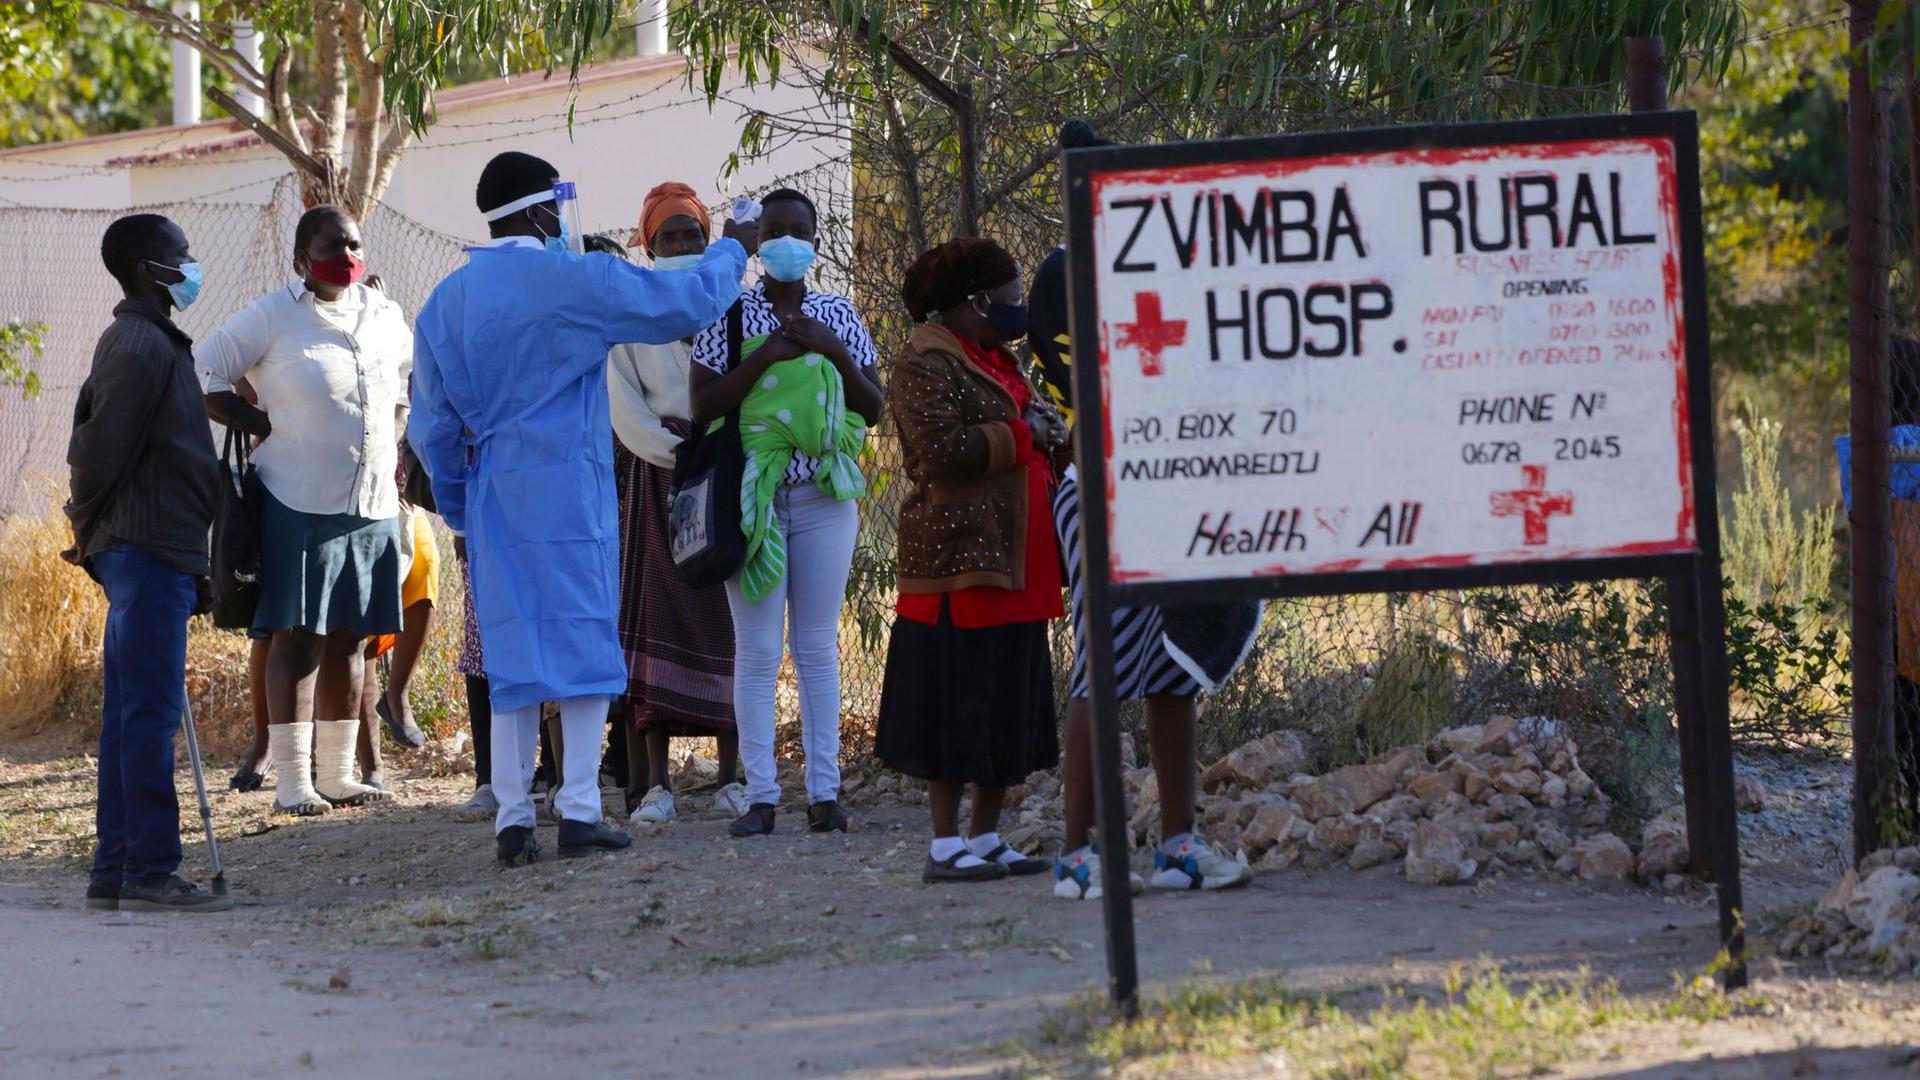 Bewohnern wird in Zvimba, Simbabwe, die Temperatur gemessen, bevor sie sich im örtlichen Krankenhaus behandeln lassen können.